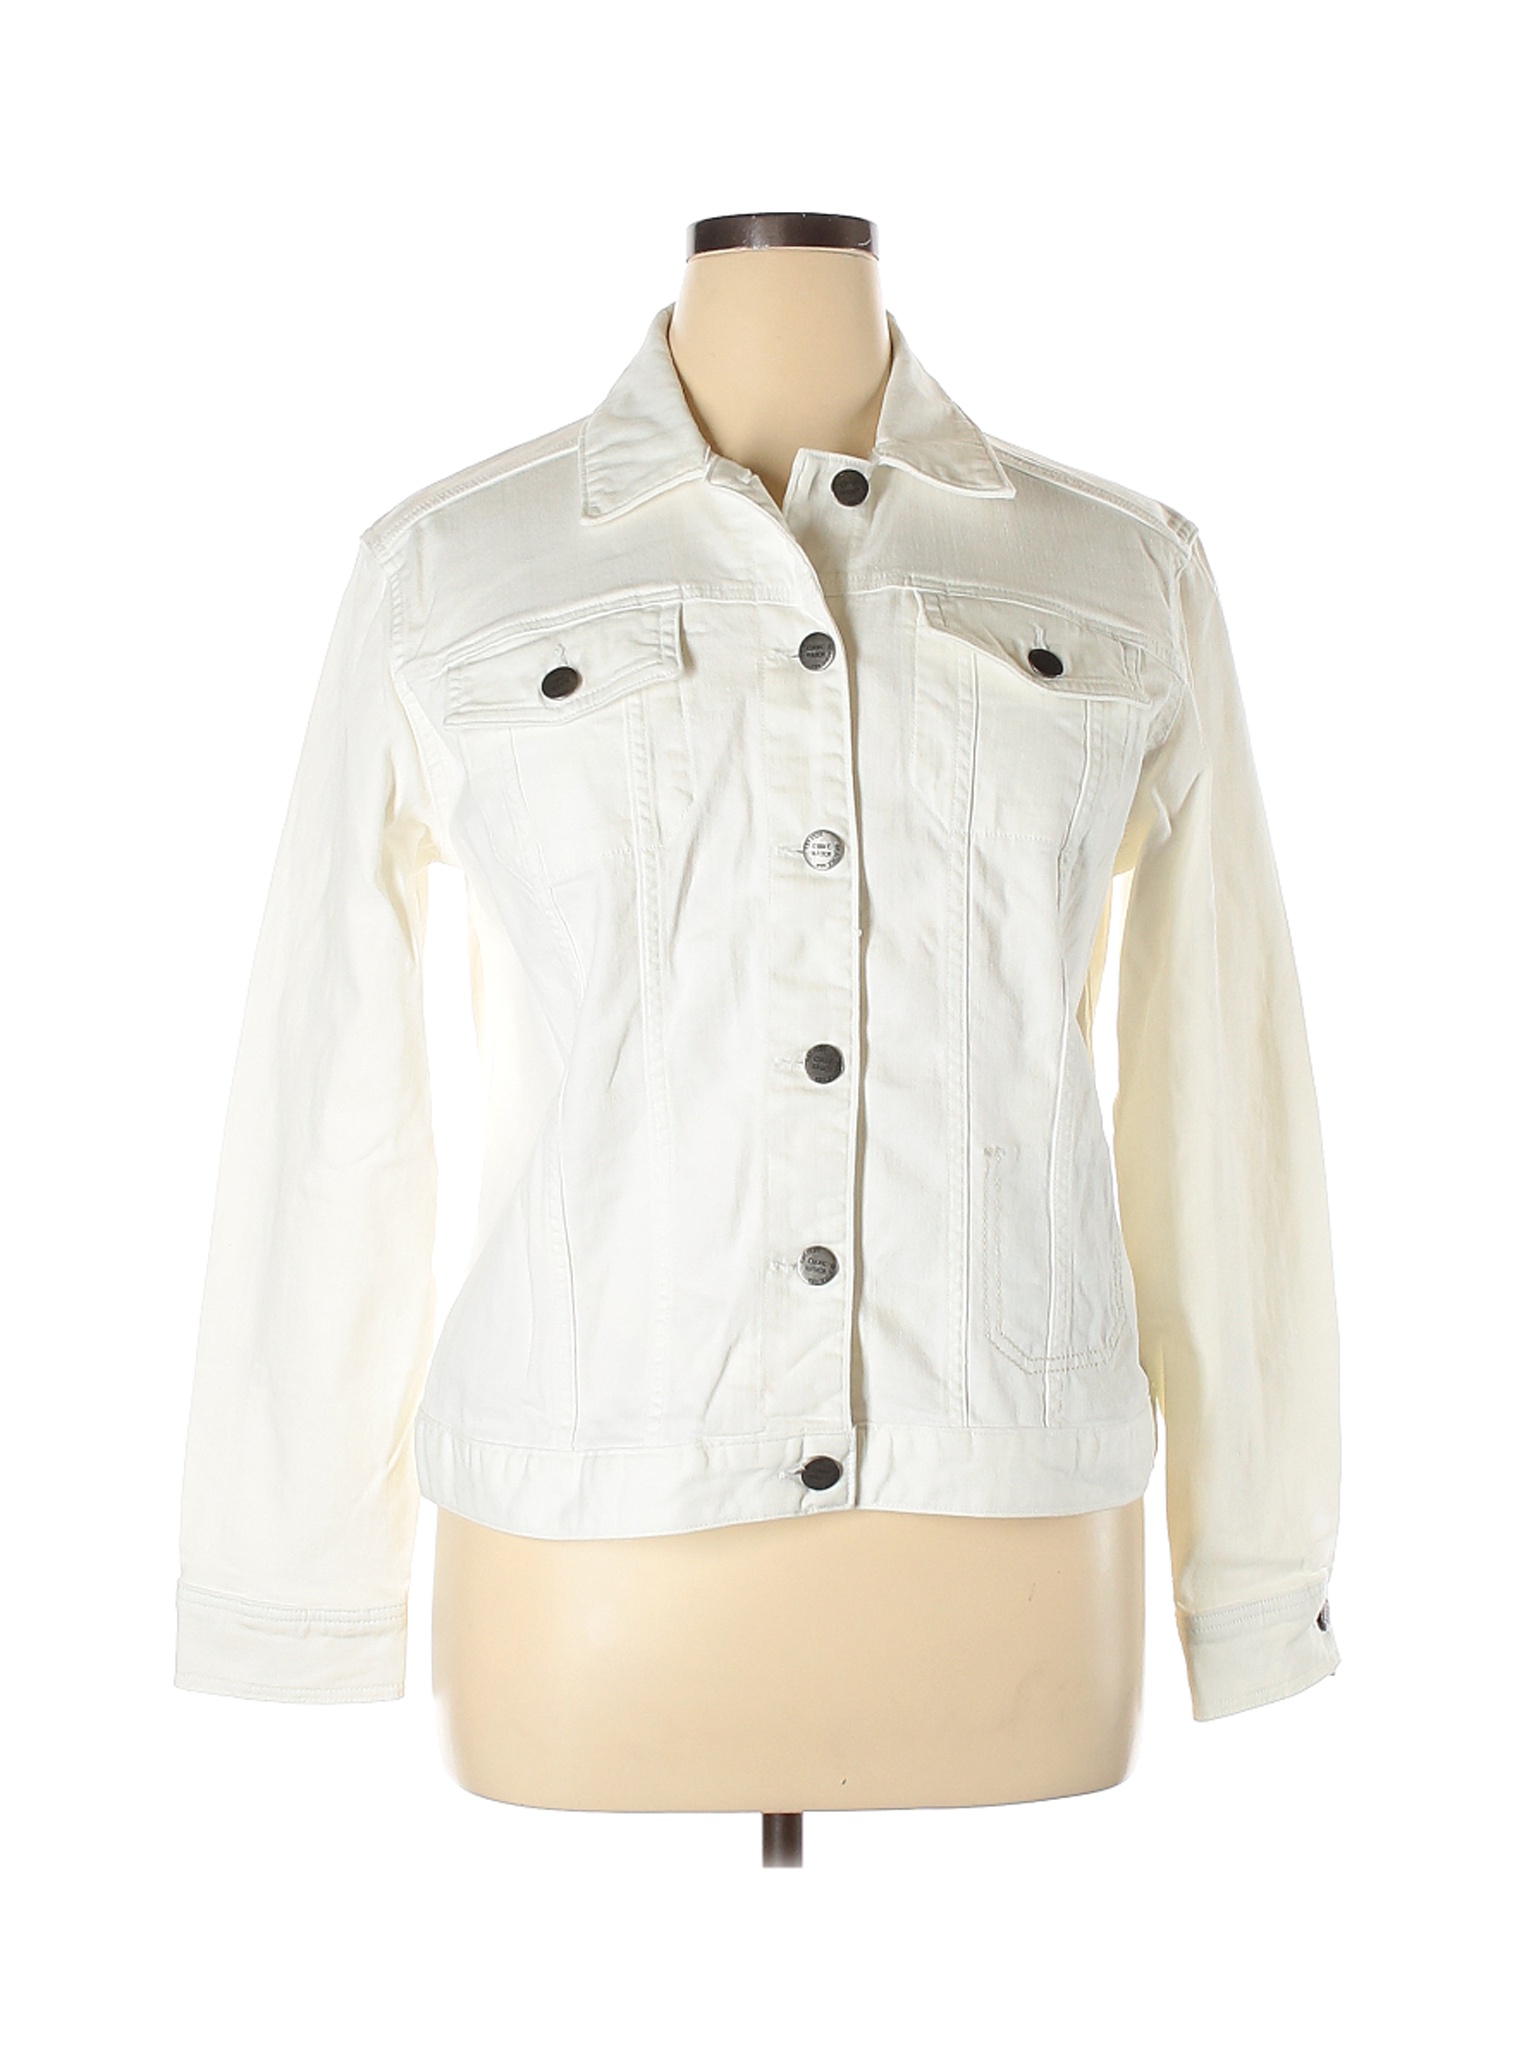 Eddie Bauer Women White Denim Jacket XL | eBay